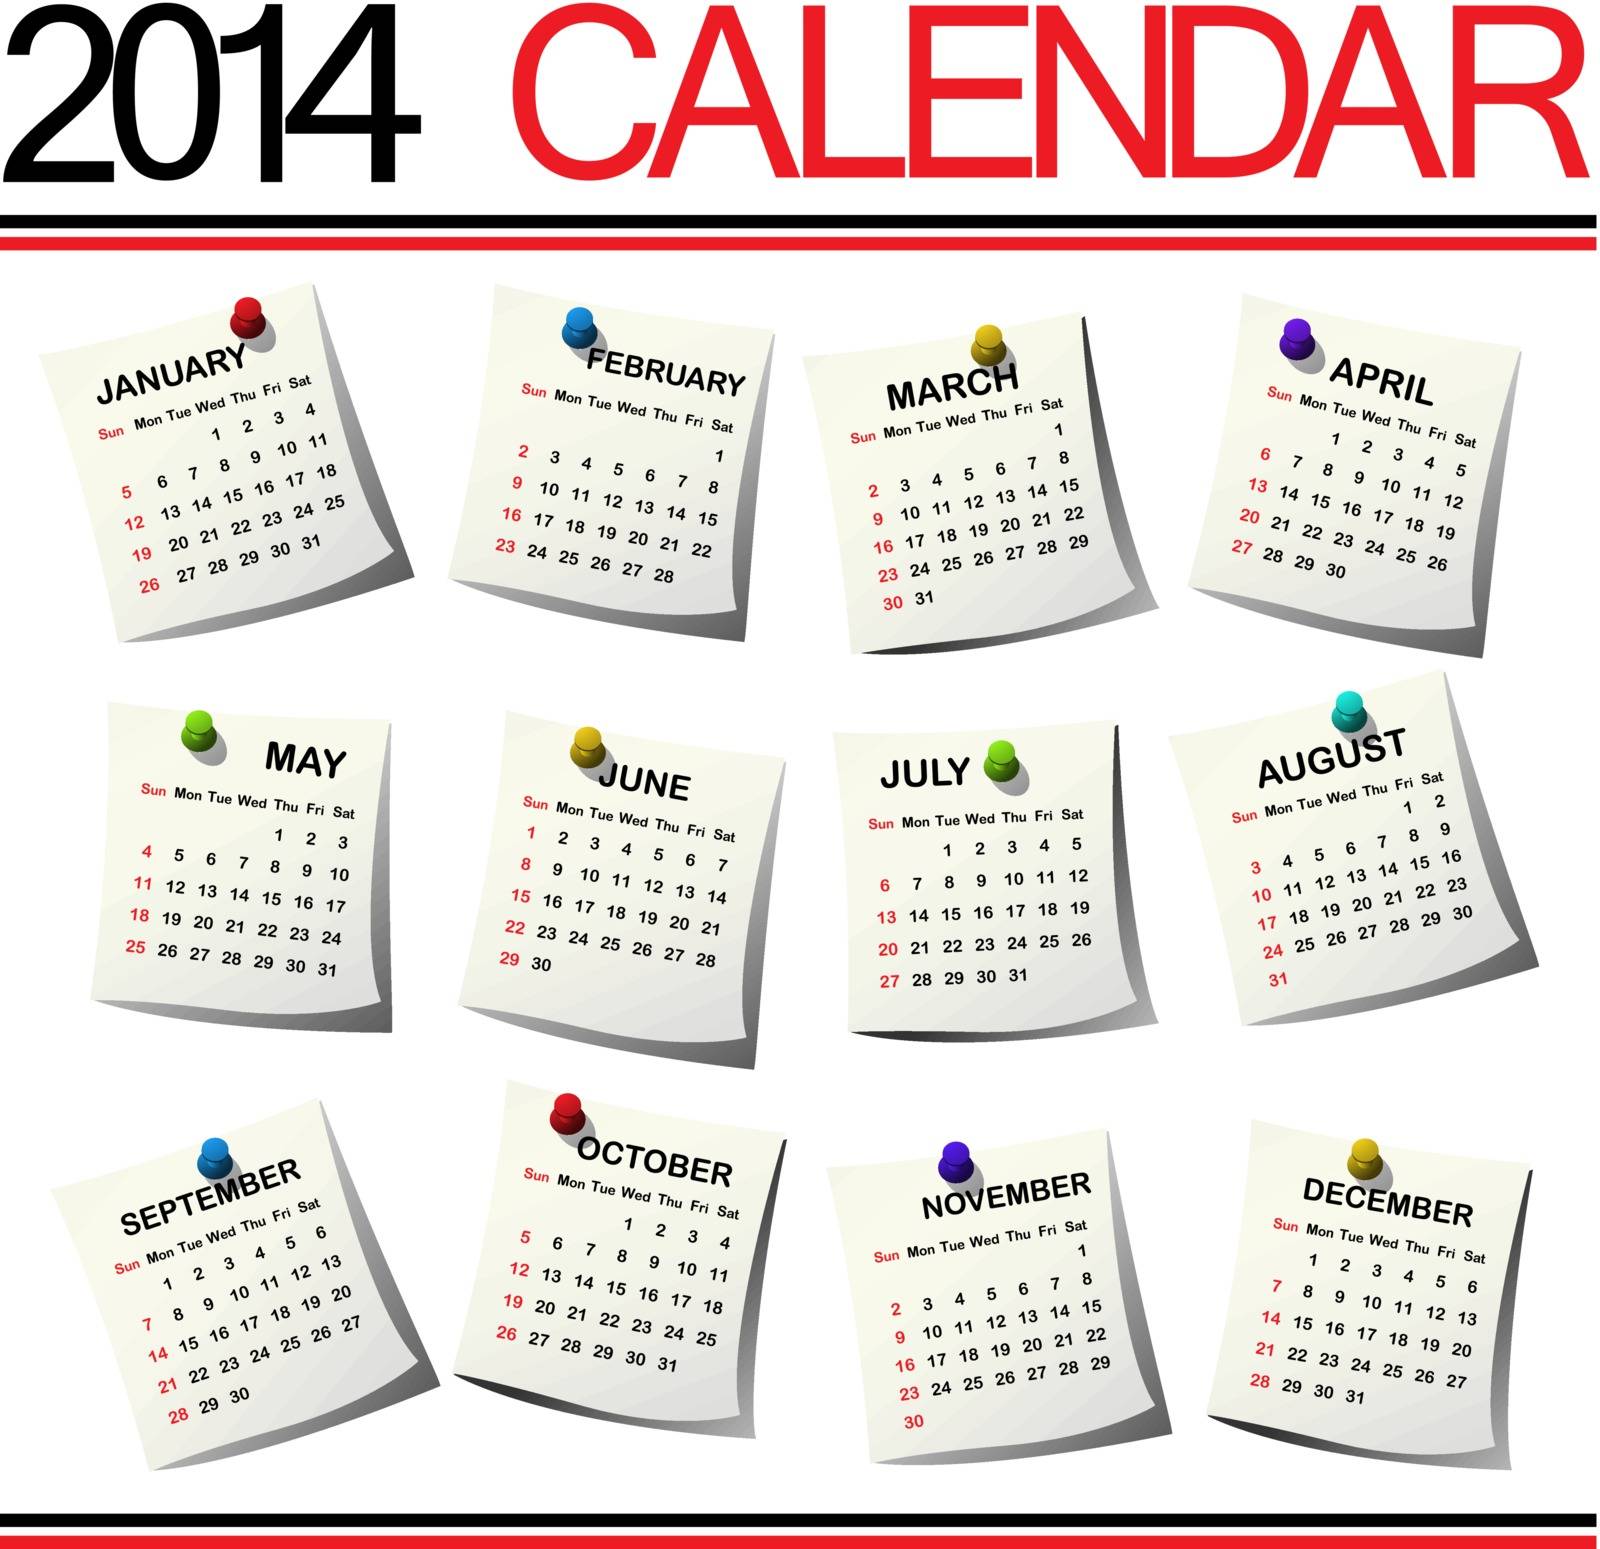 2014 Calendar against white background